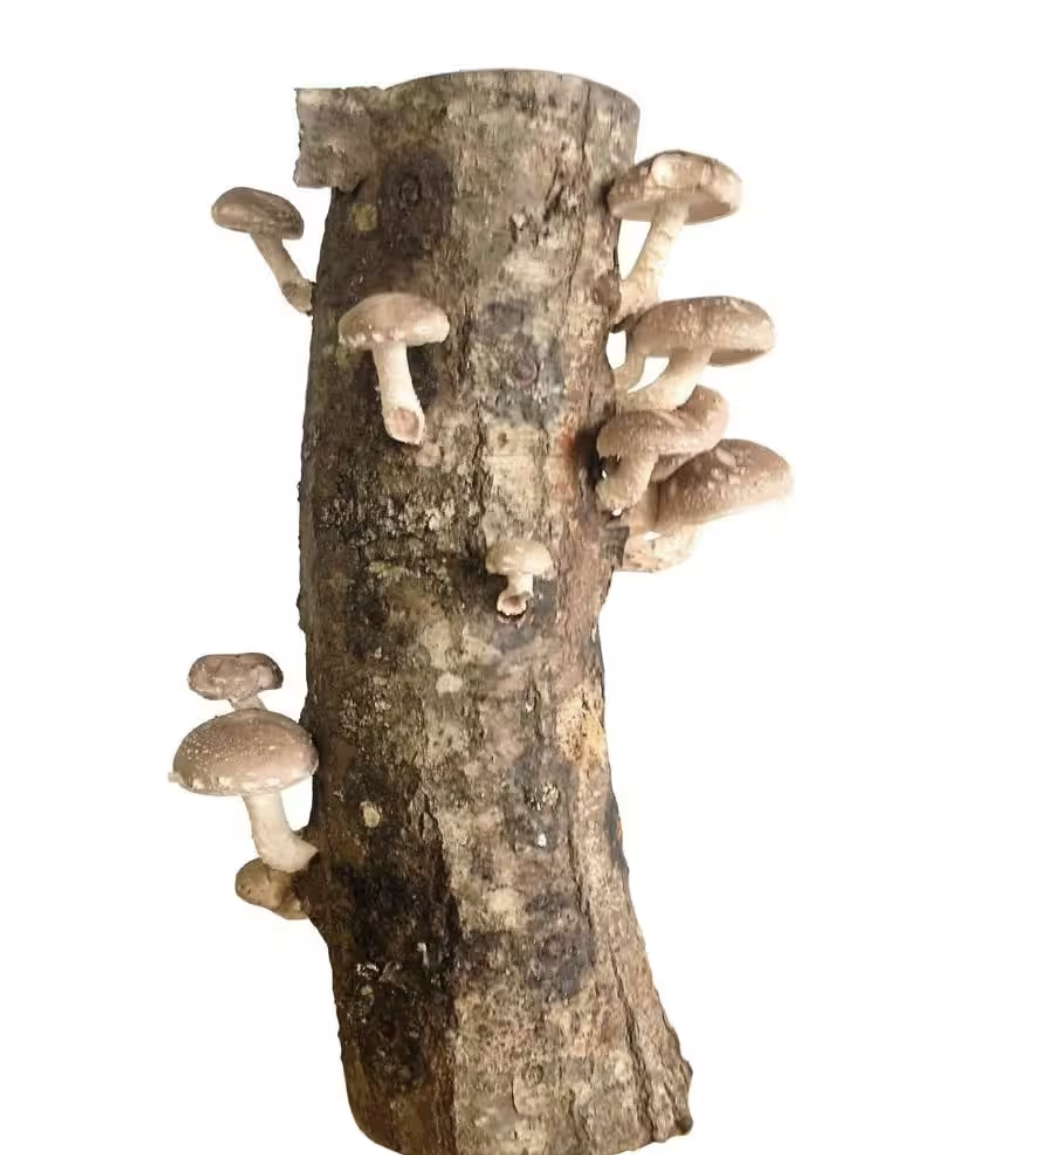 shitake mushroom log